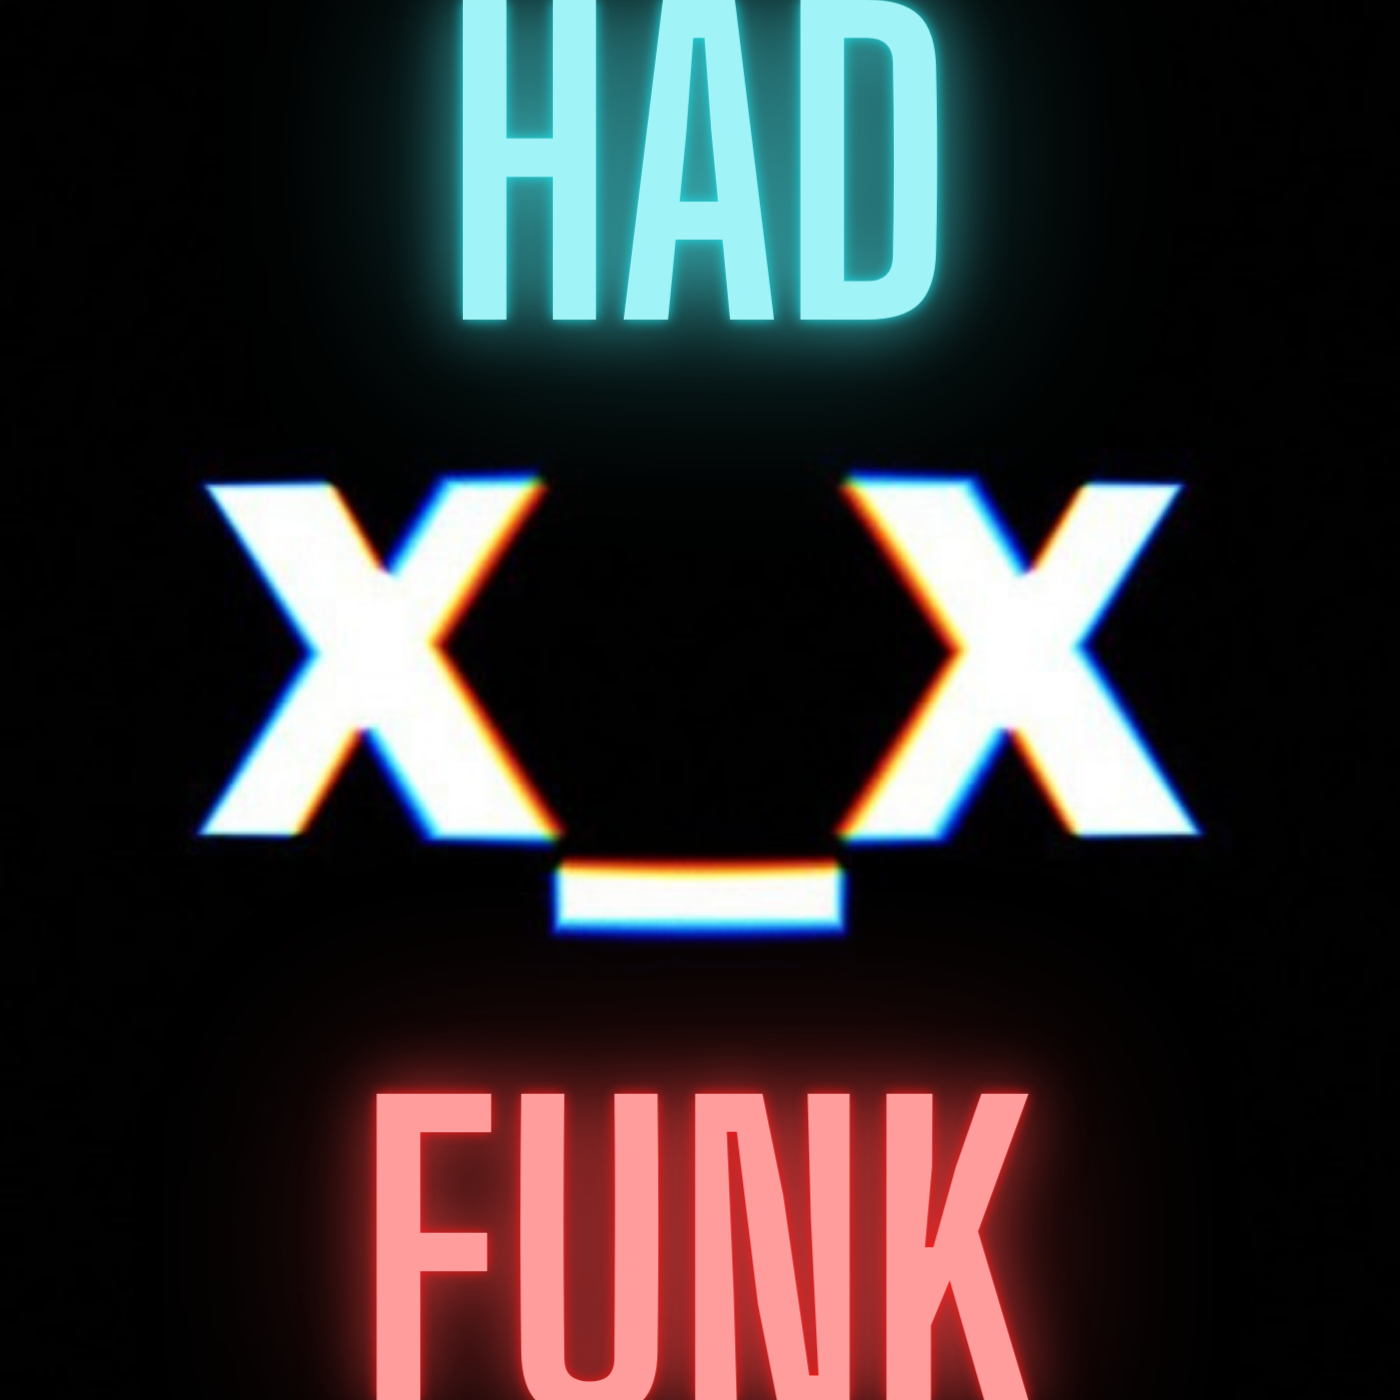 Had Funk